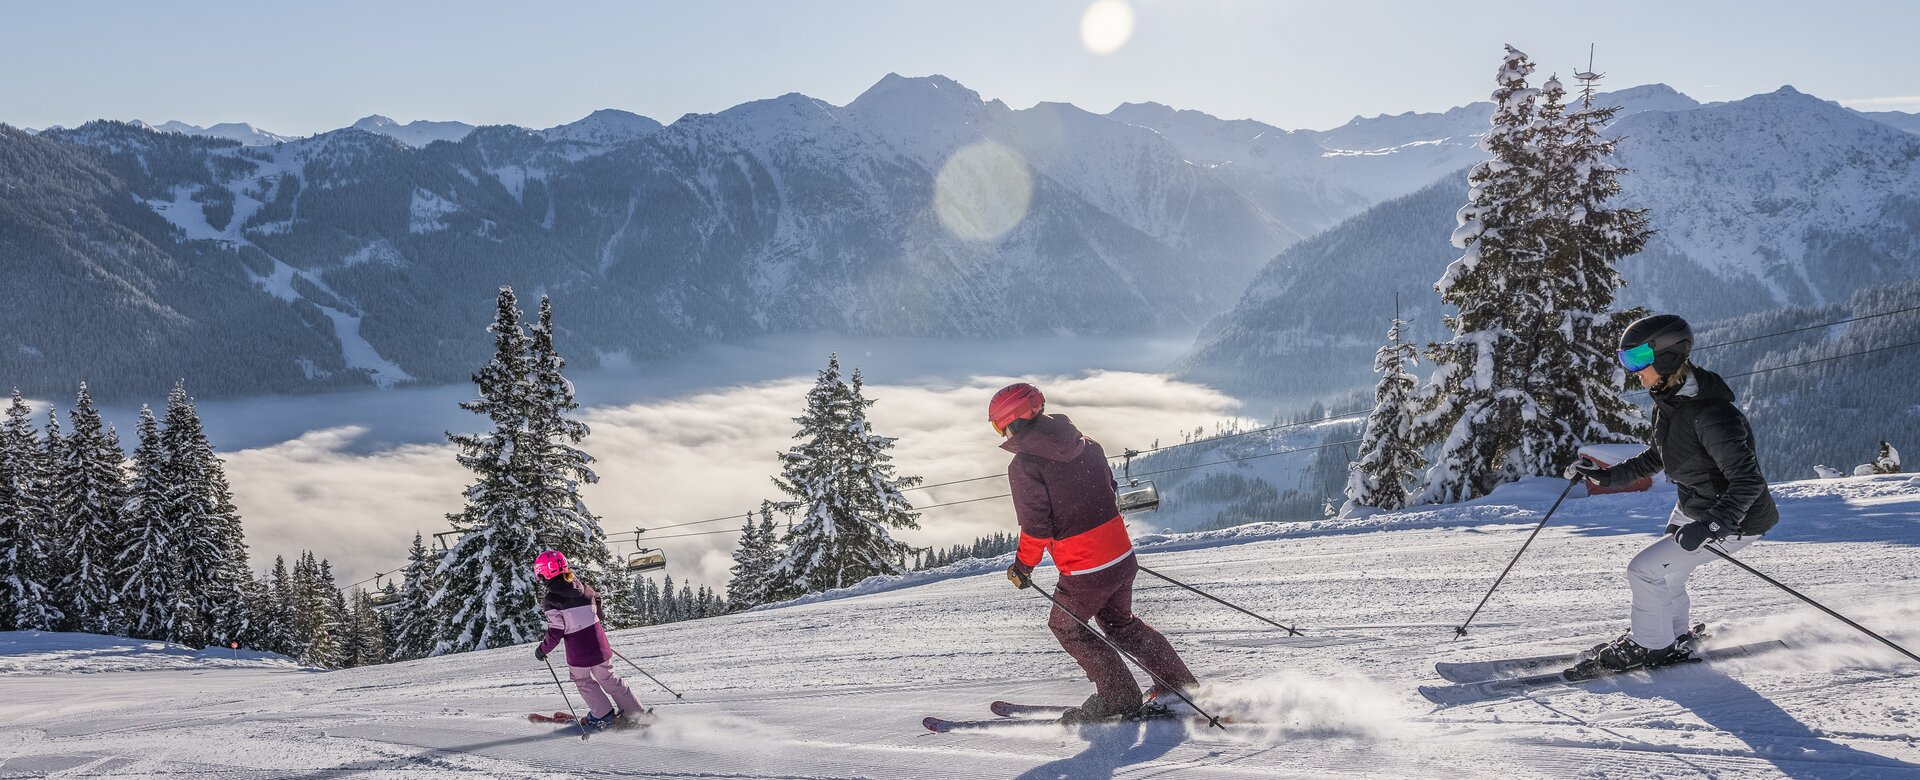 Eine Familie fährt die Piste mit Skiern hinab und rundherum ist alles schneebedeckt | © Salzburger_Sportwelt_Michael_Groessinger